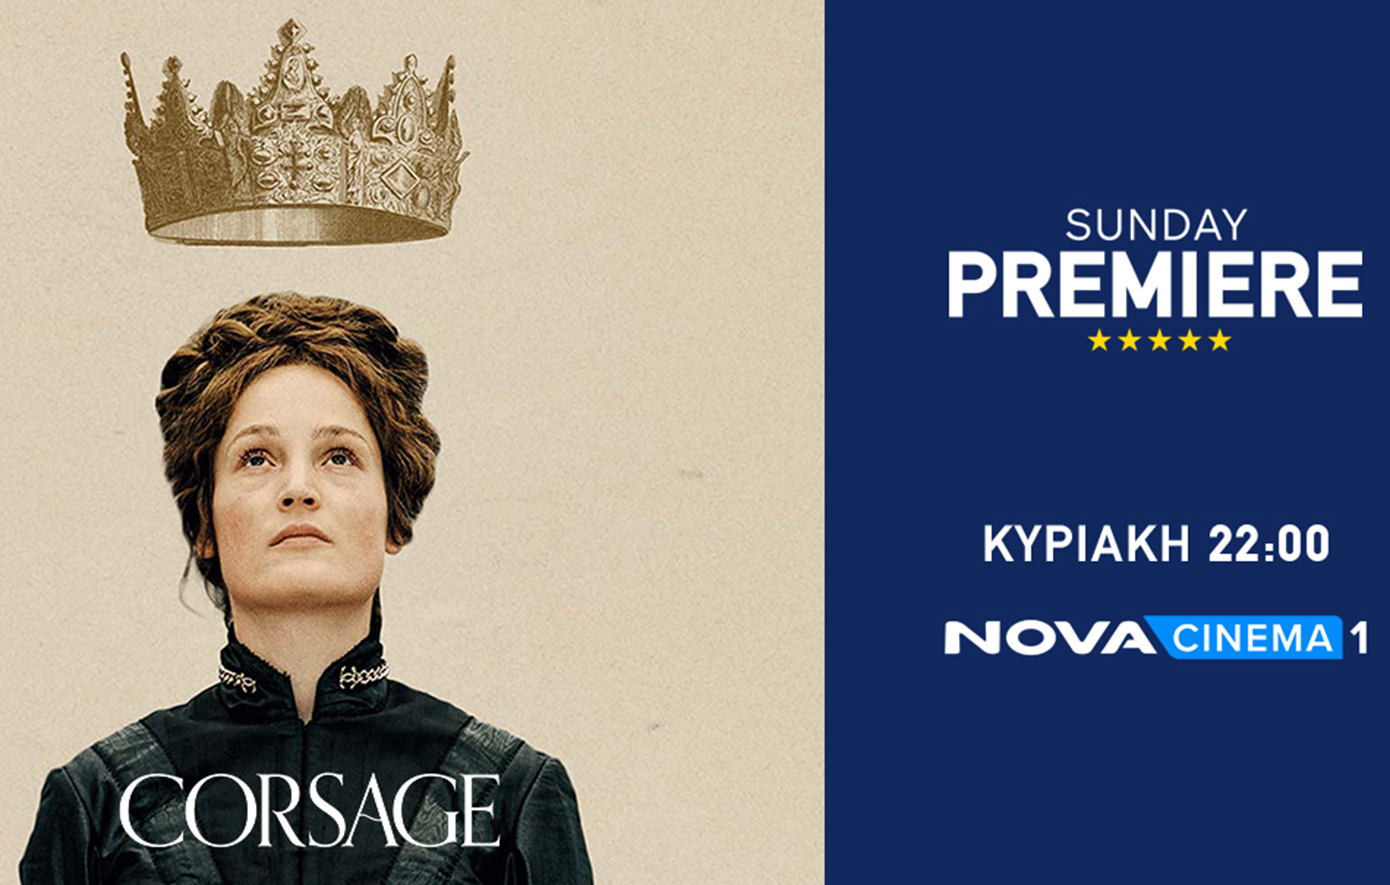 Δυνατές συγκινήσεις με τη δραματική ταινία «Corsage» στη ζώνη Sunday Premiere της Nova!